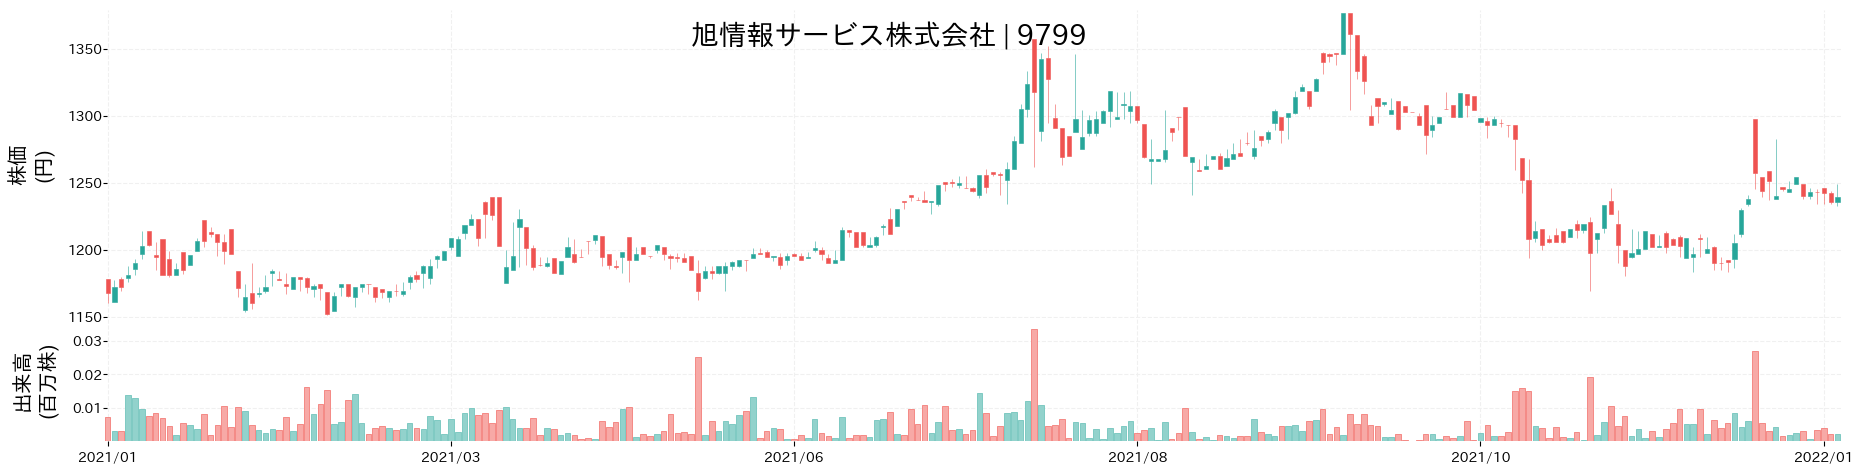 旭情報サービスの株価推移(2021)